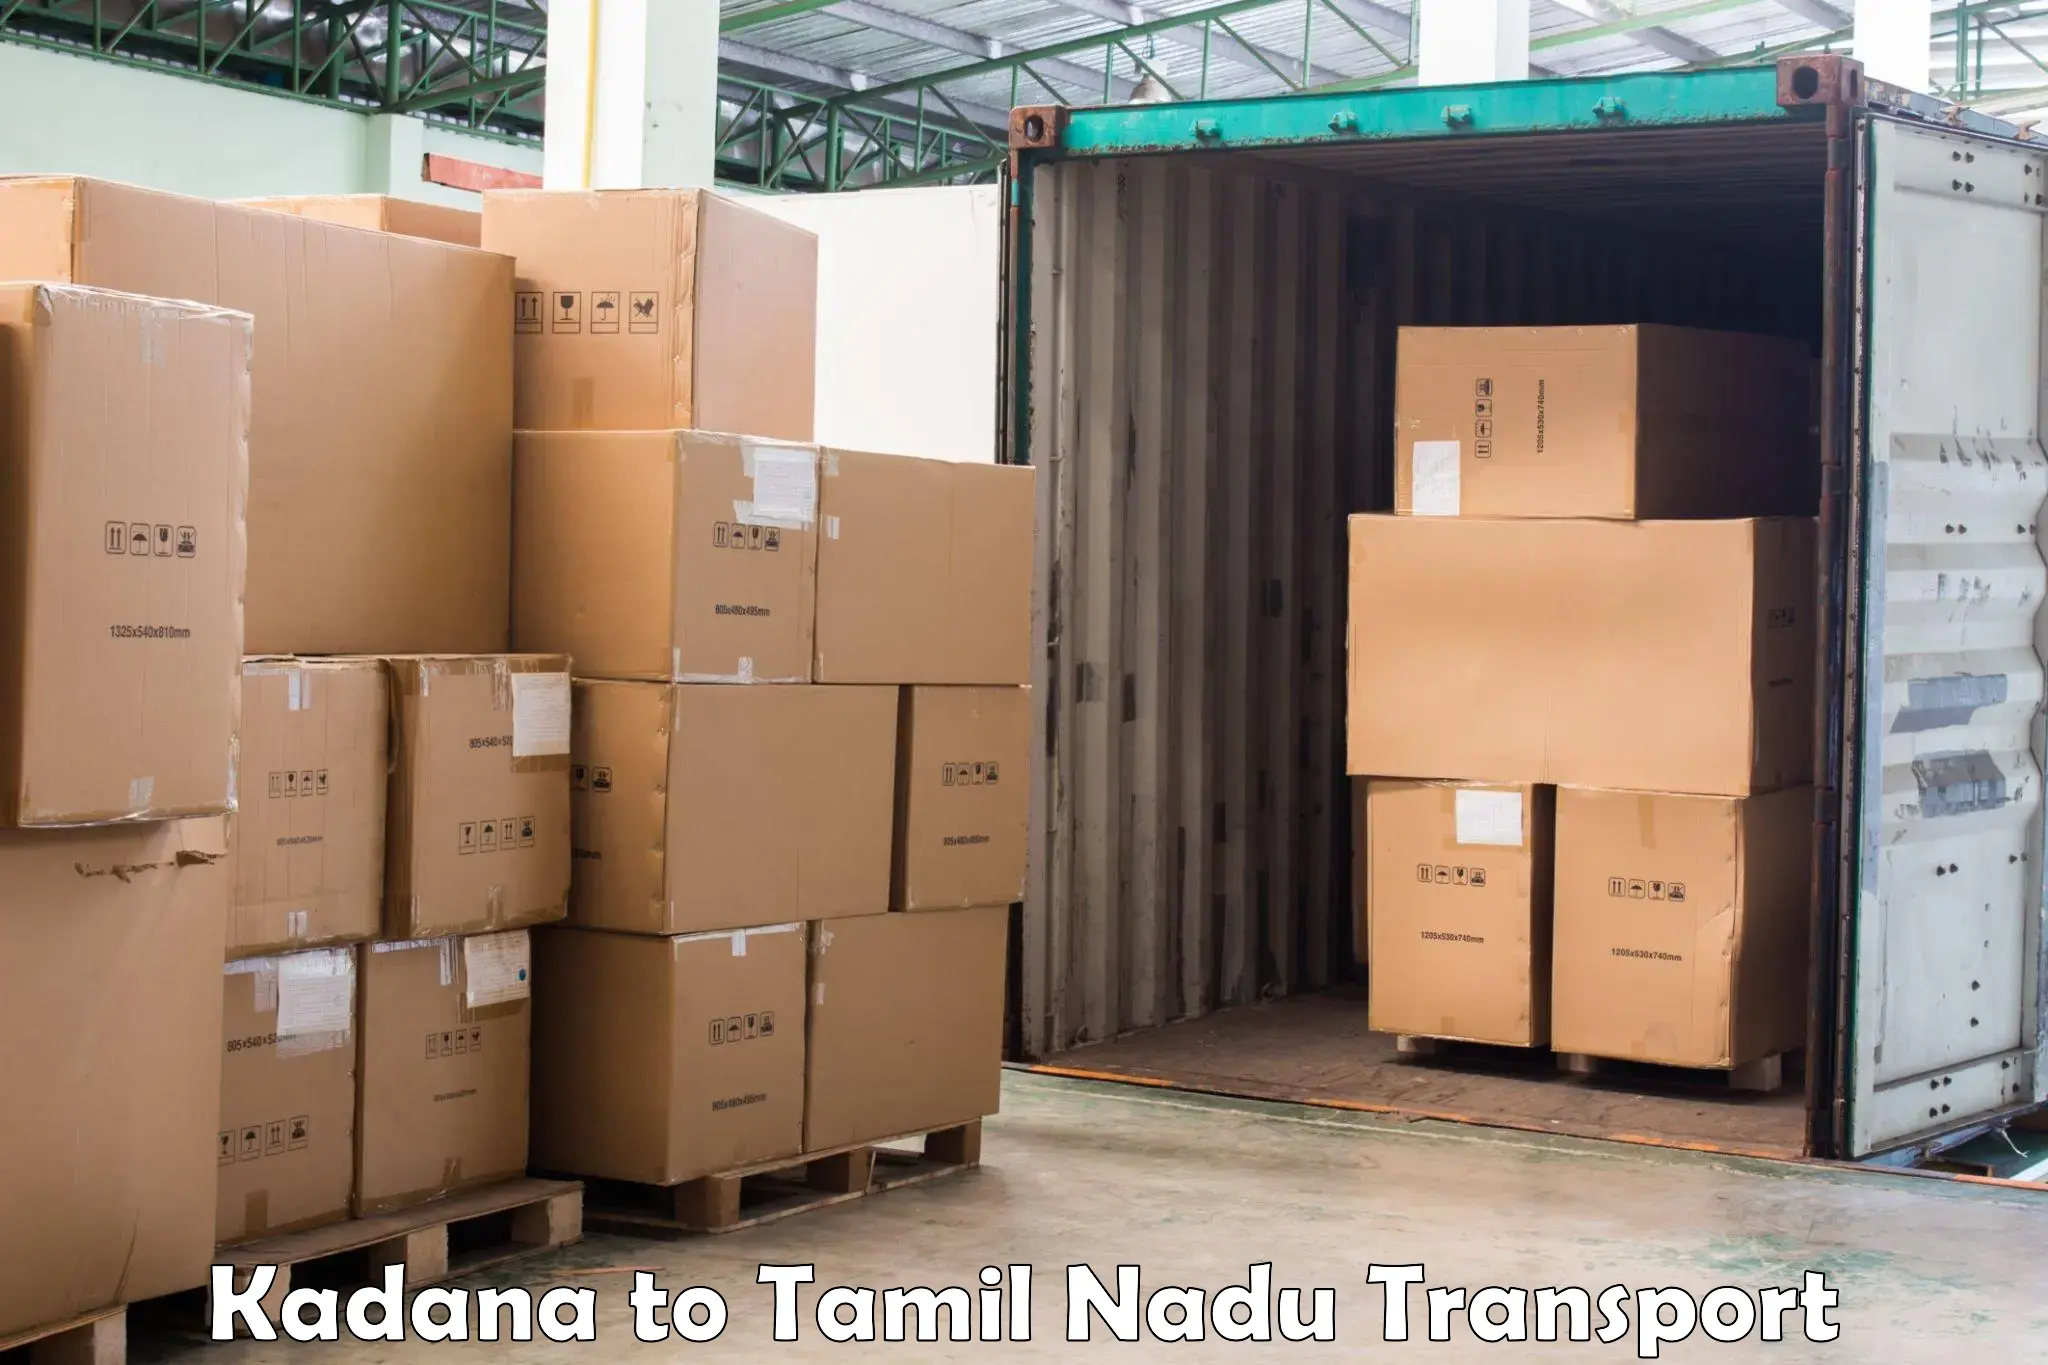 Truck transport companies in India Kadana to Vriddhachalam